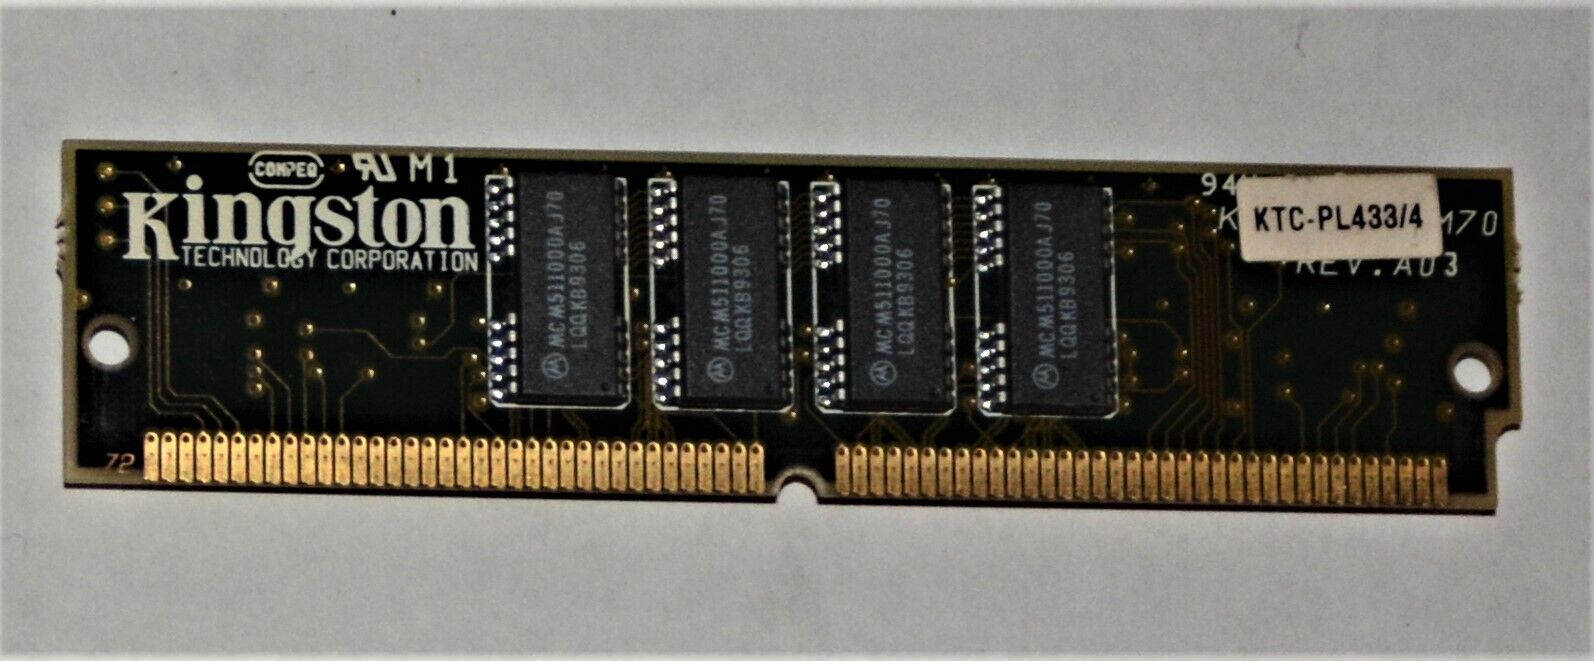 Kingston KTC-PL433/4 4MB SIMM Memory Module KTCPL4334